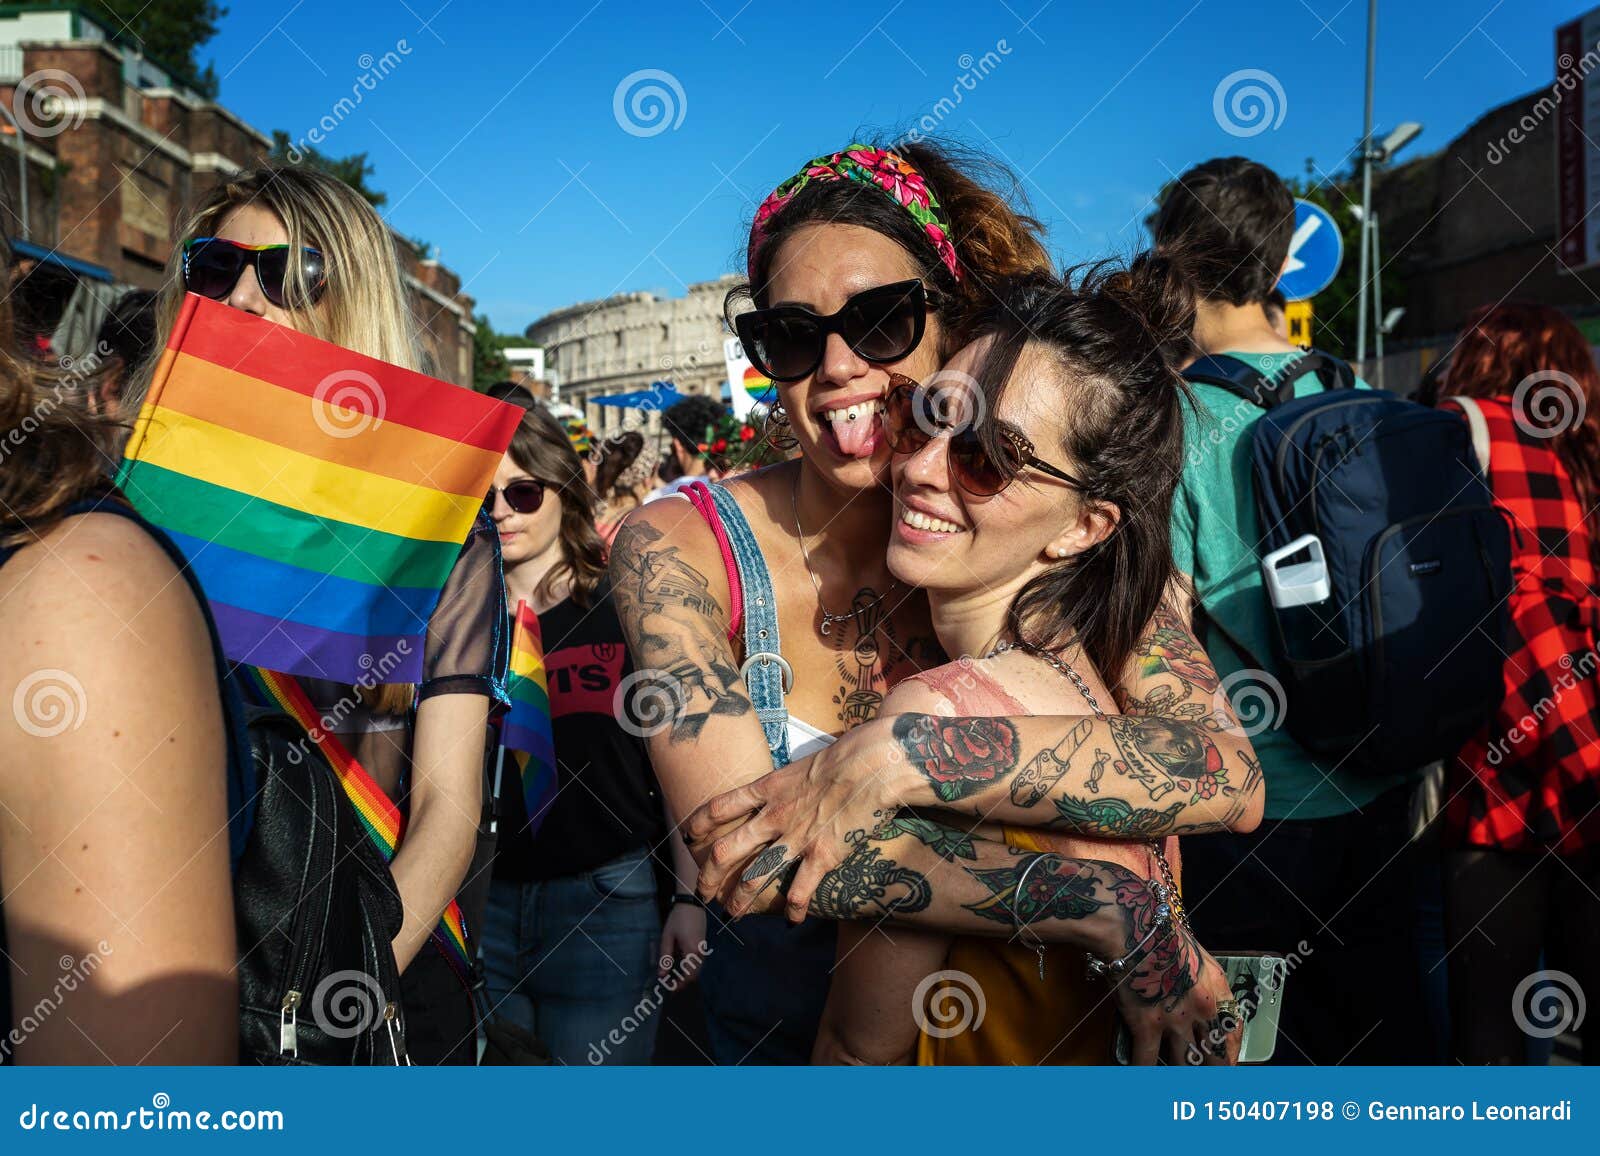 Lesbian Fuck Public Party Lesbian Public Sex Party Lesbian Public Sex Party Lesbian Public